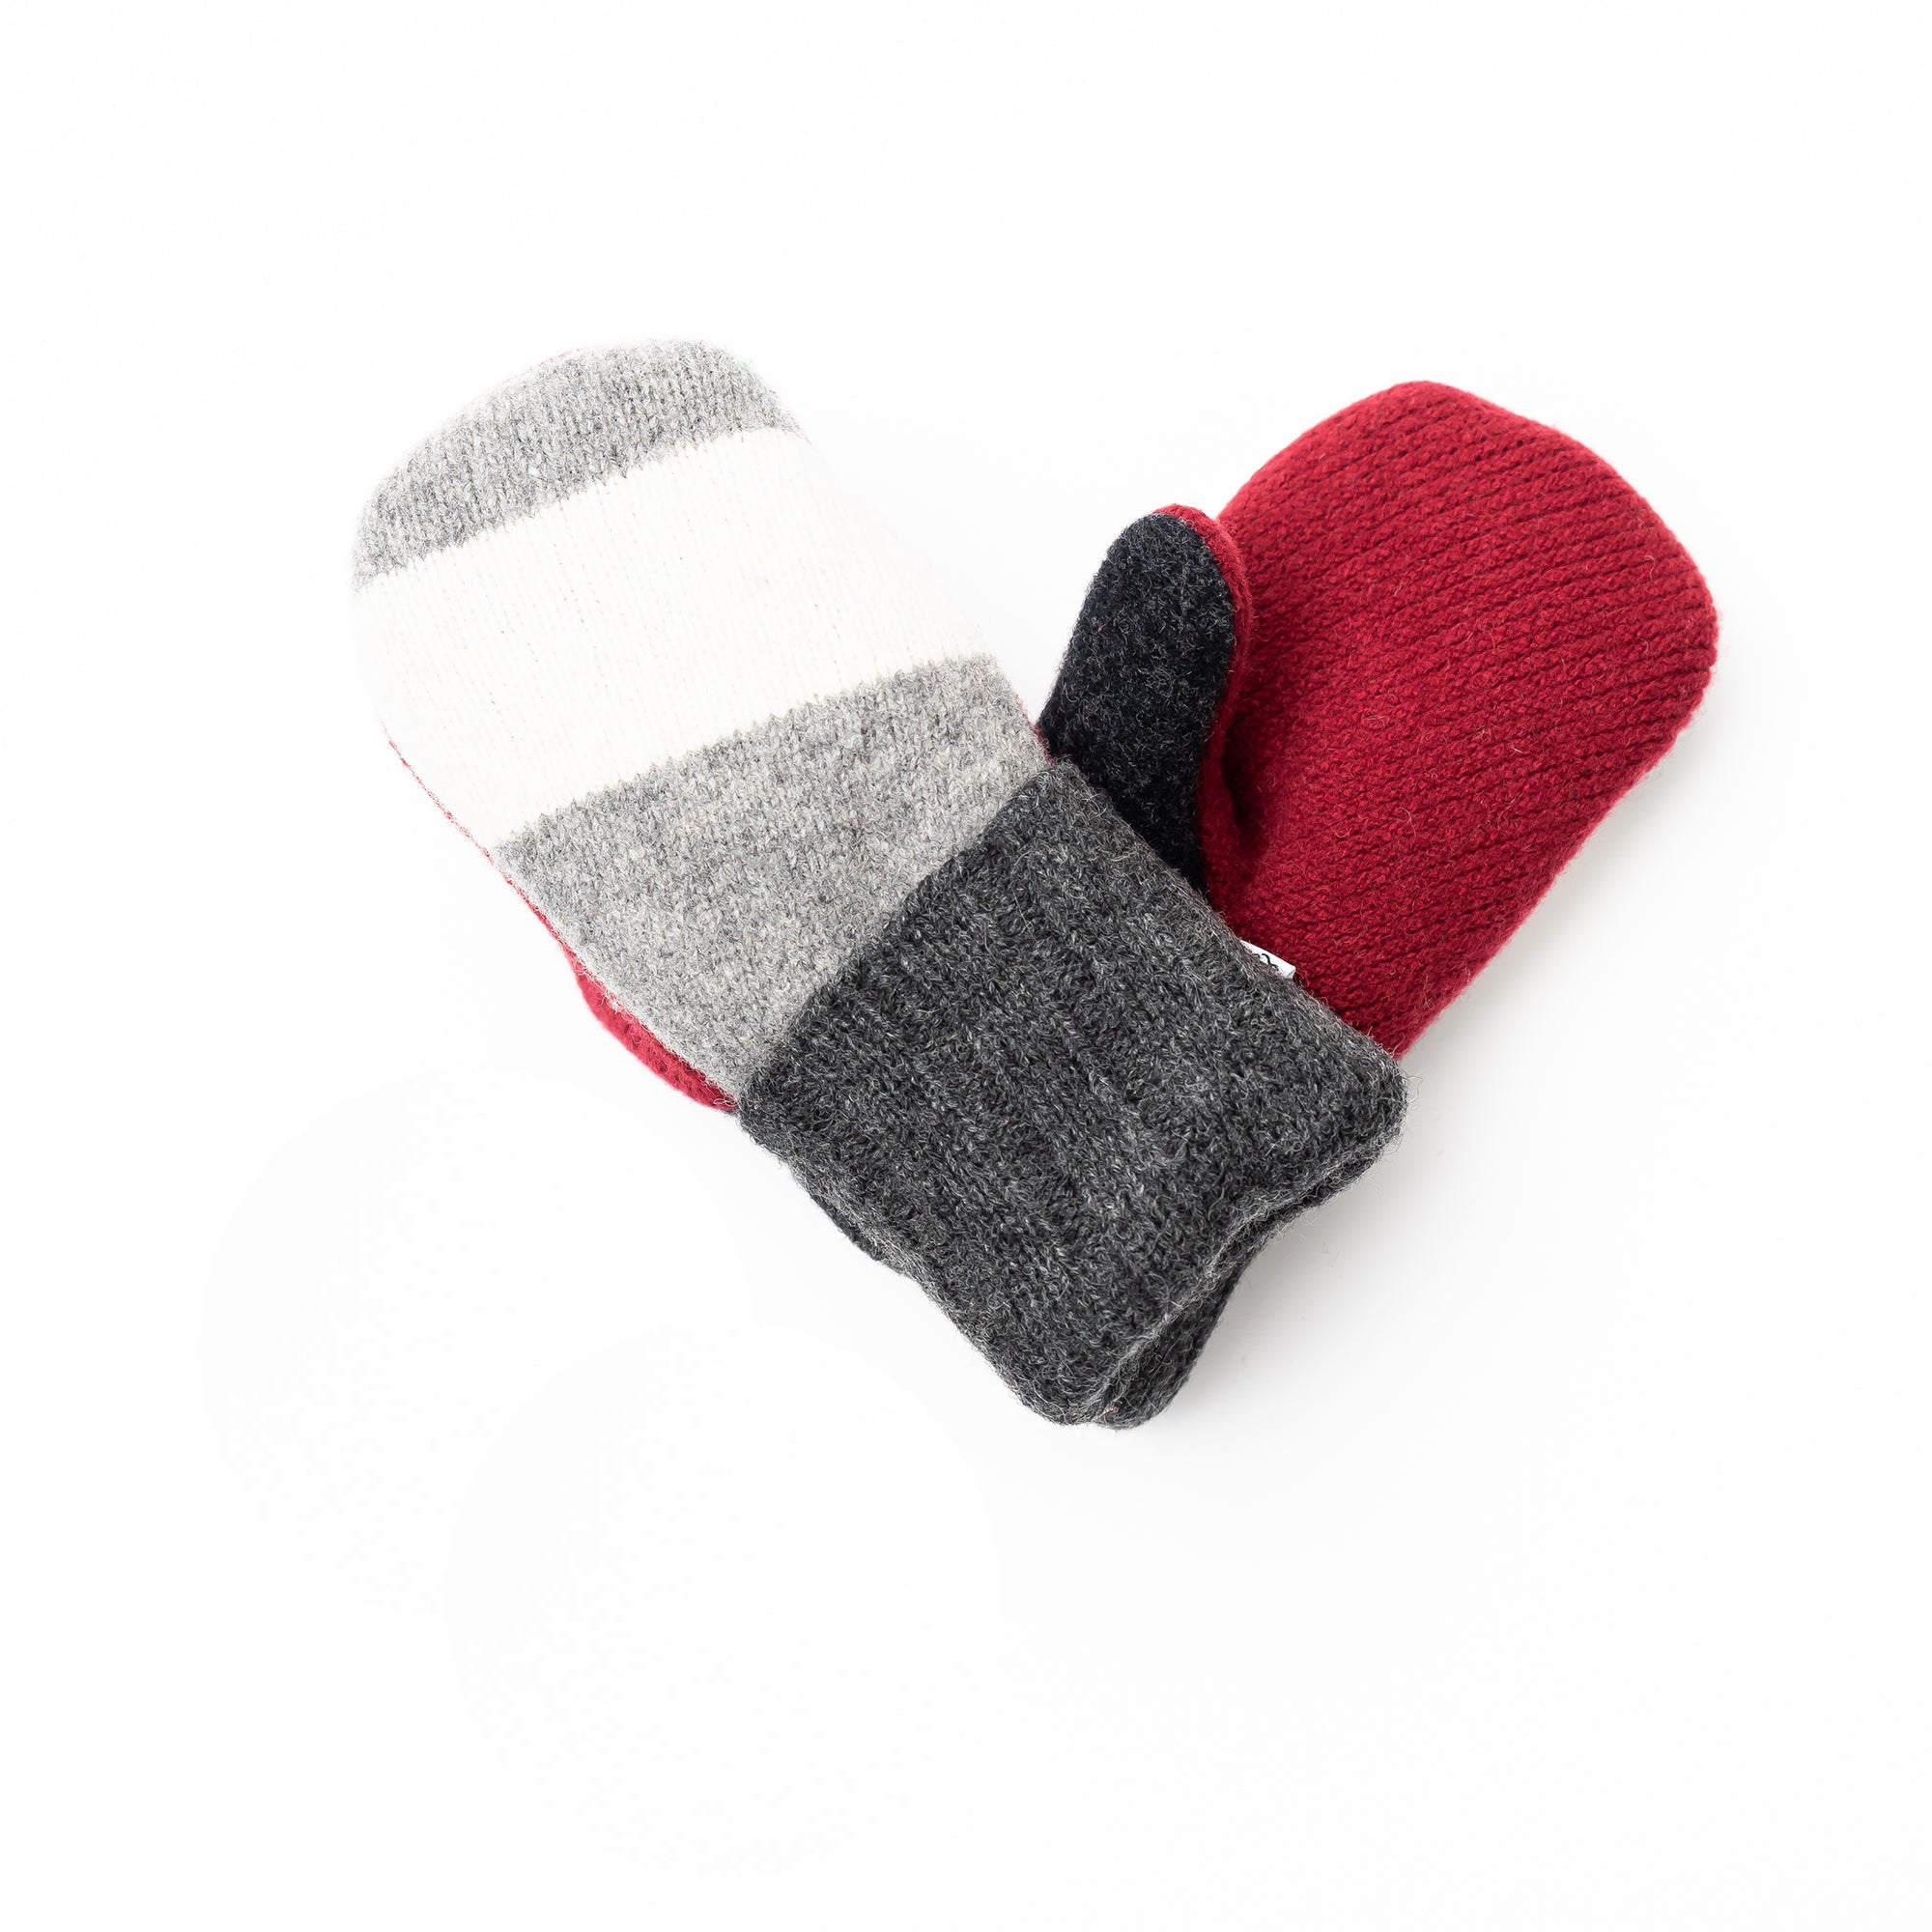 Small Kid's Wool Sweater Mittens | Santa's Helper